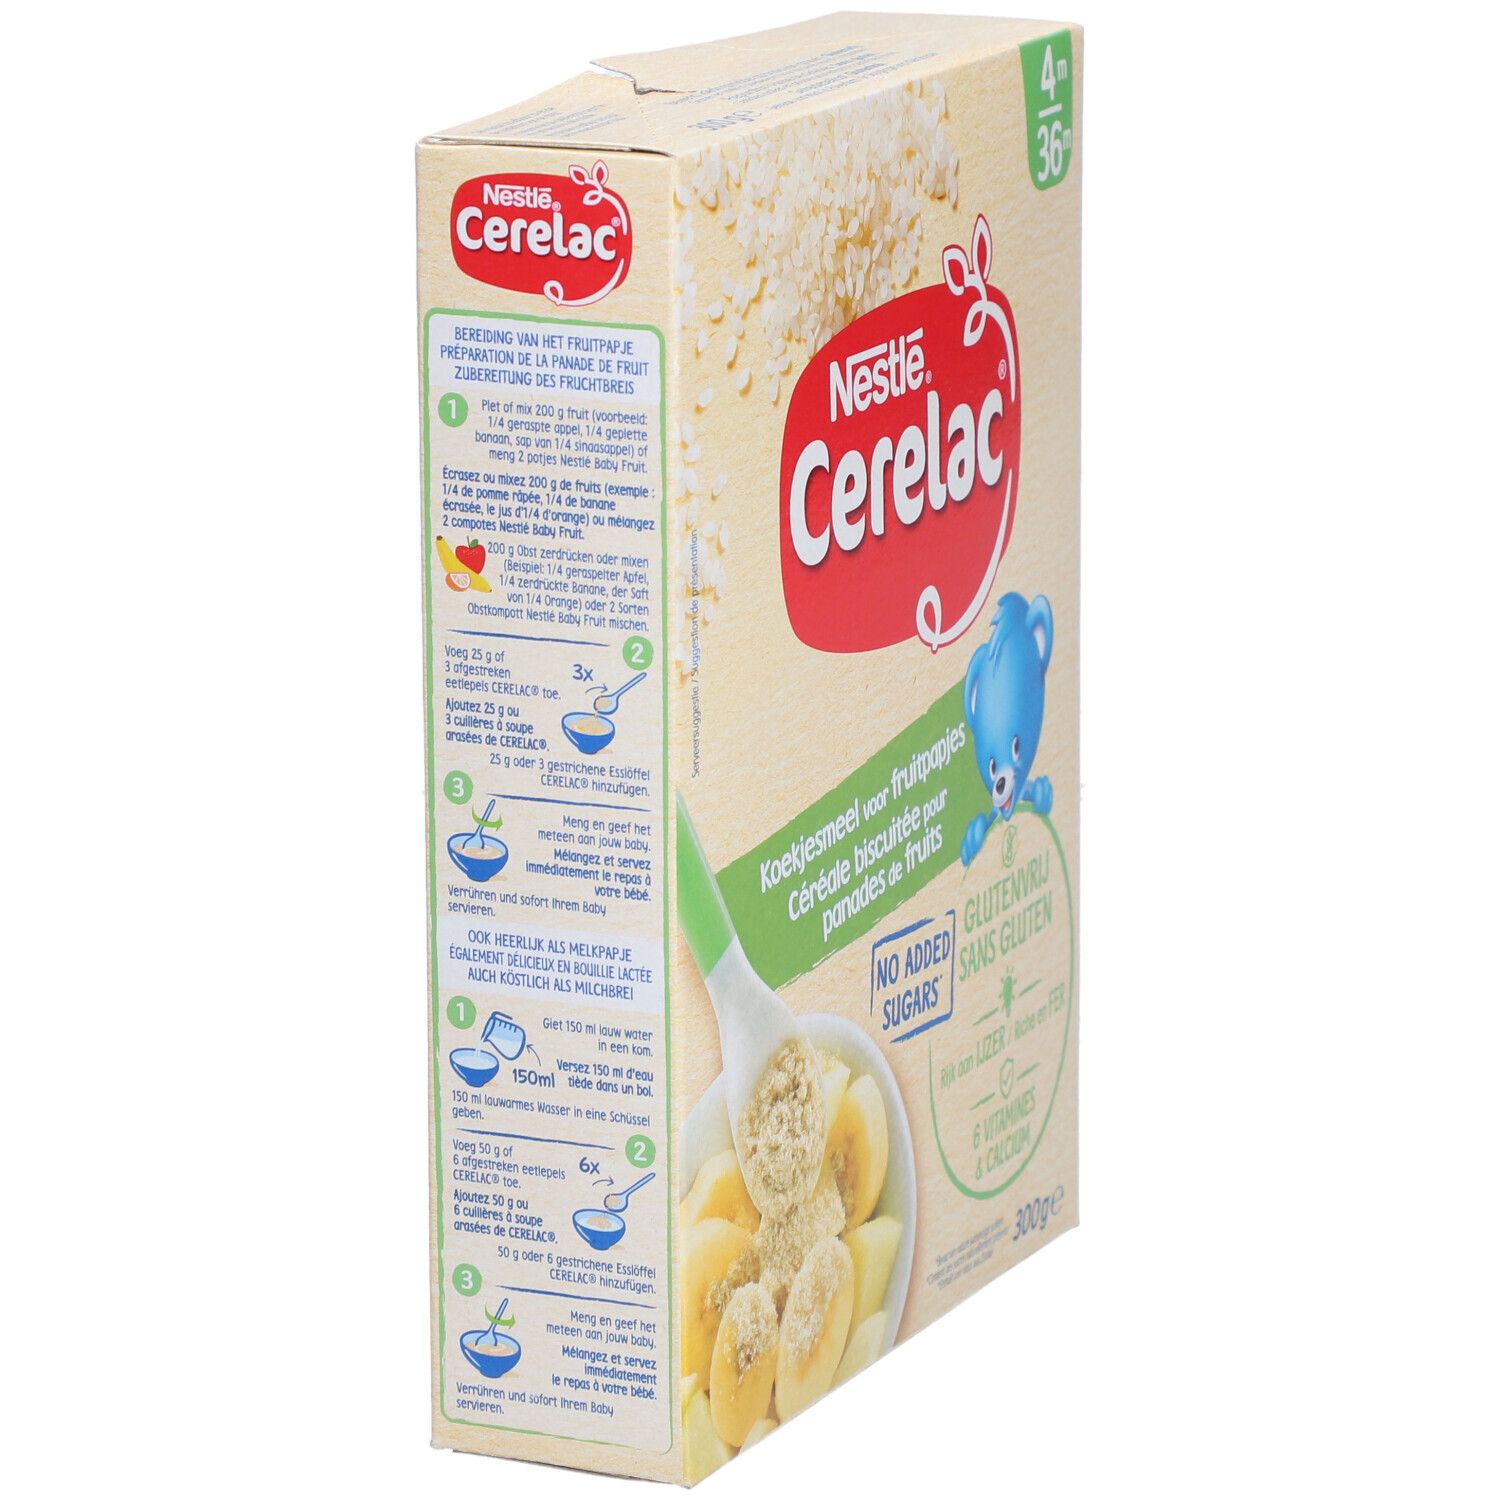 Nestlé® Cerelac® Céréale Biscuitée Dès 4/ 6 mois